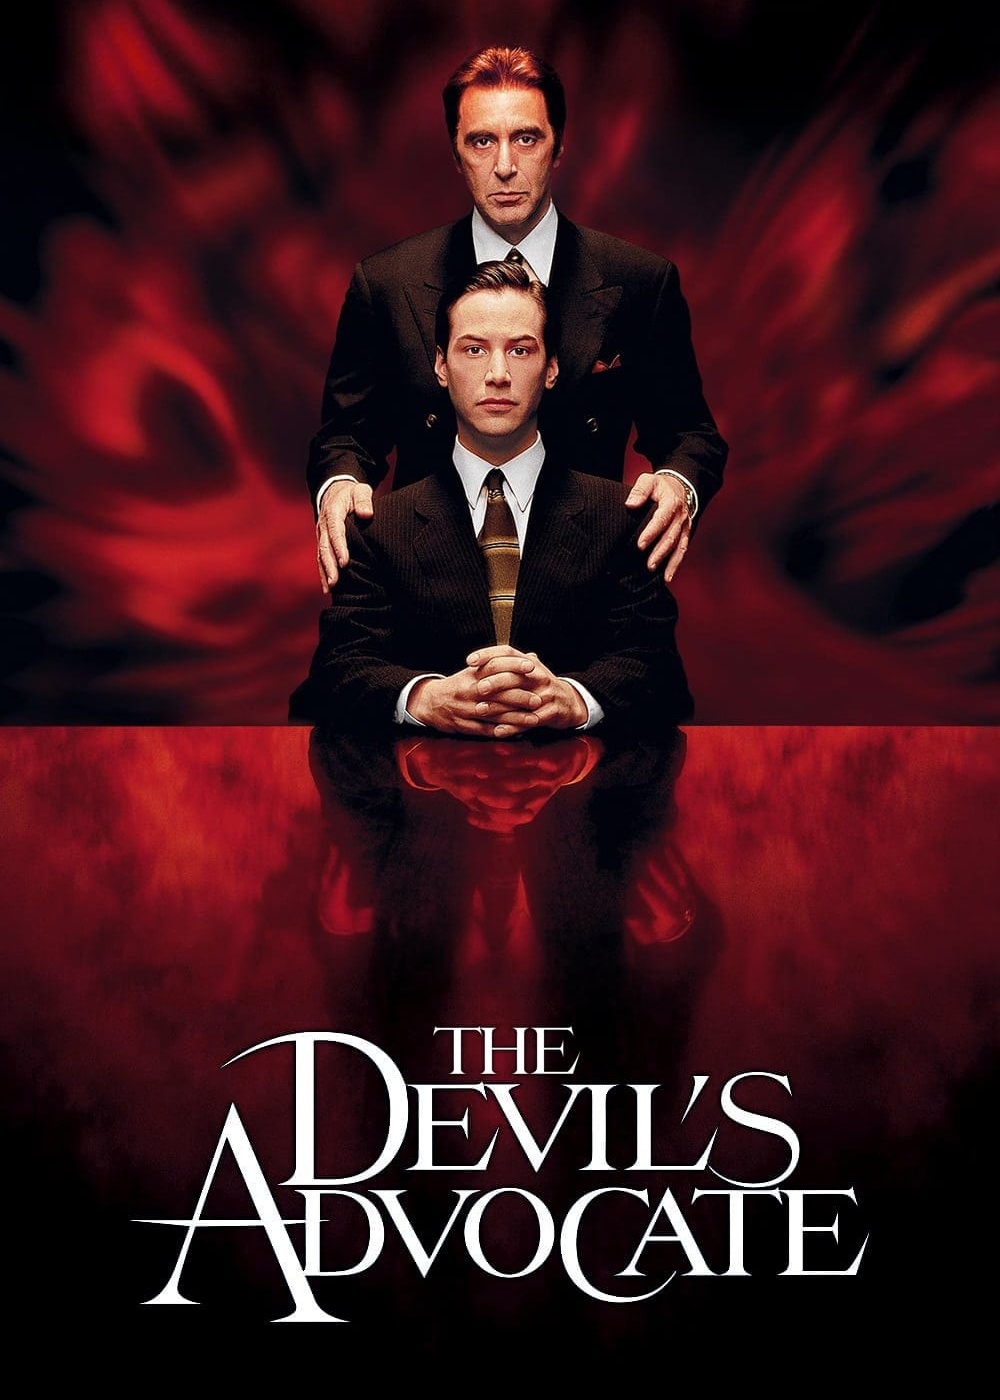 The Devil's Advocate - The Devil's Advocate